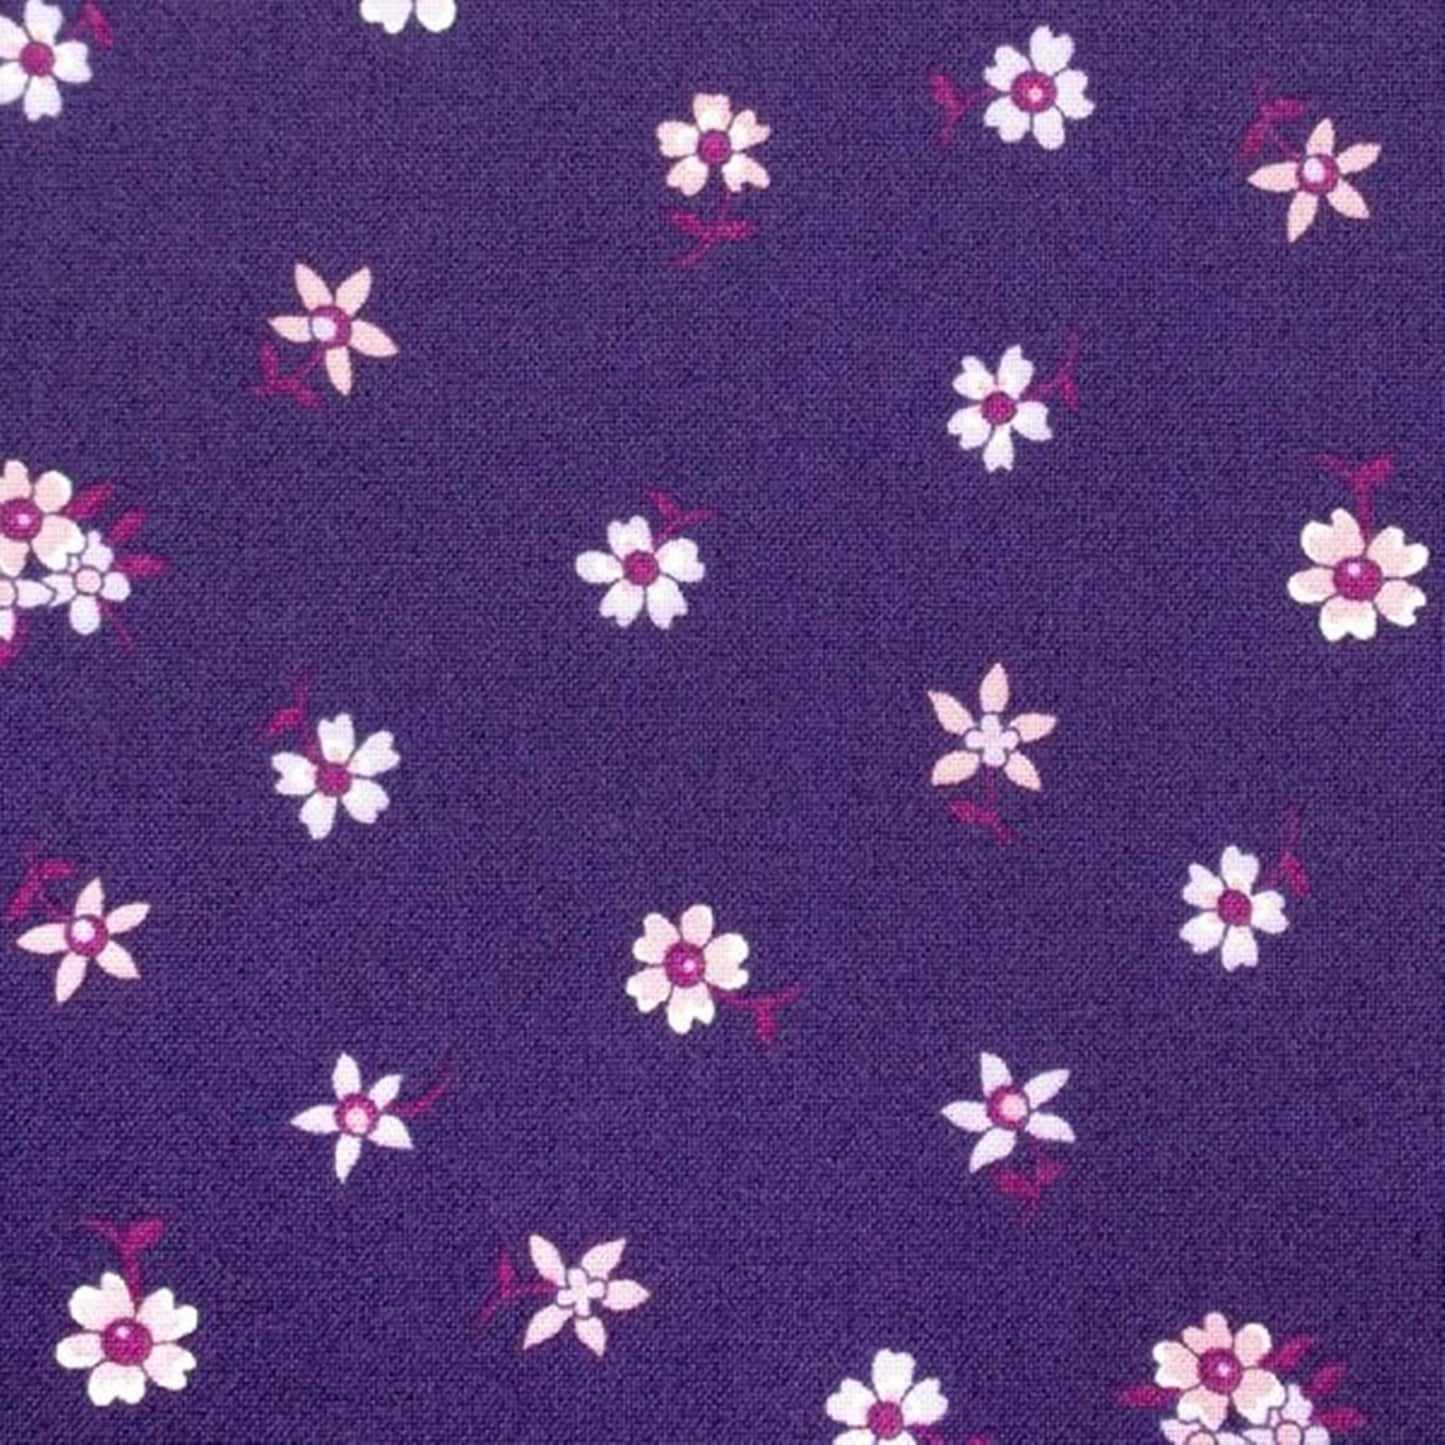 Liberty Flower Show Botanical Jewel bundle A - 5 Fat Quarters cotton quilt fabric